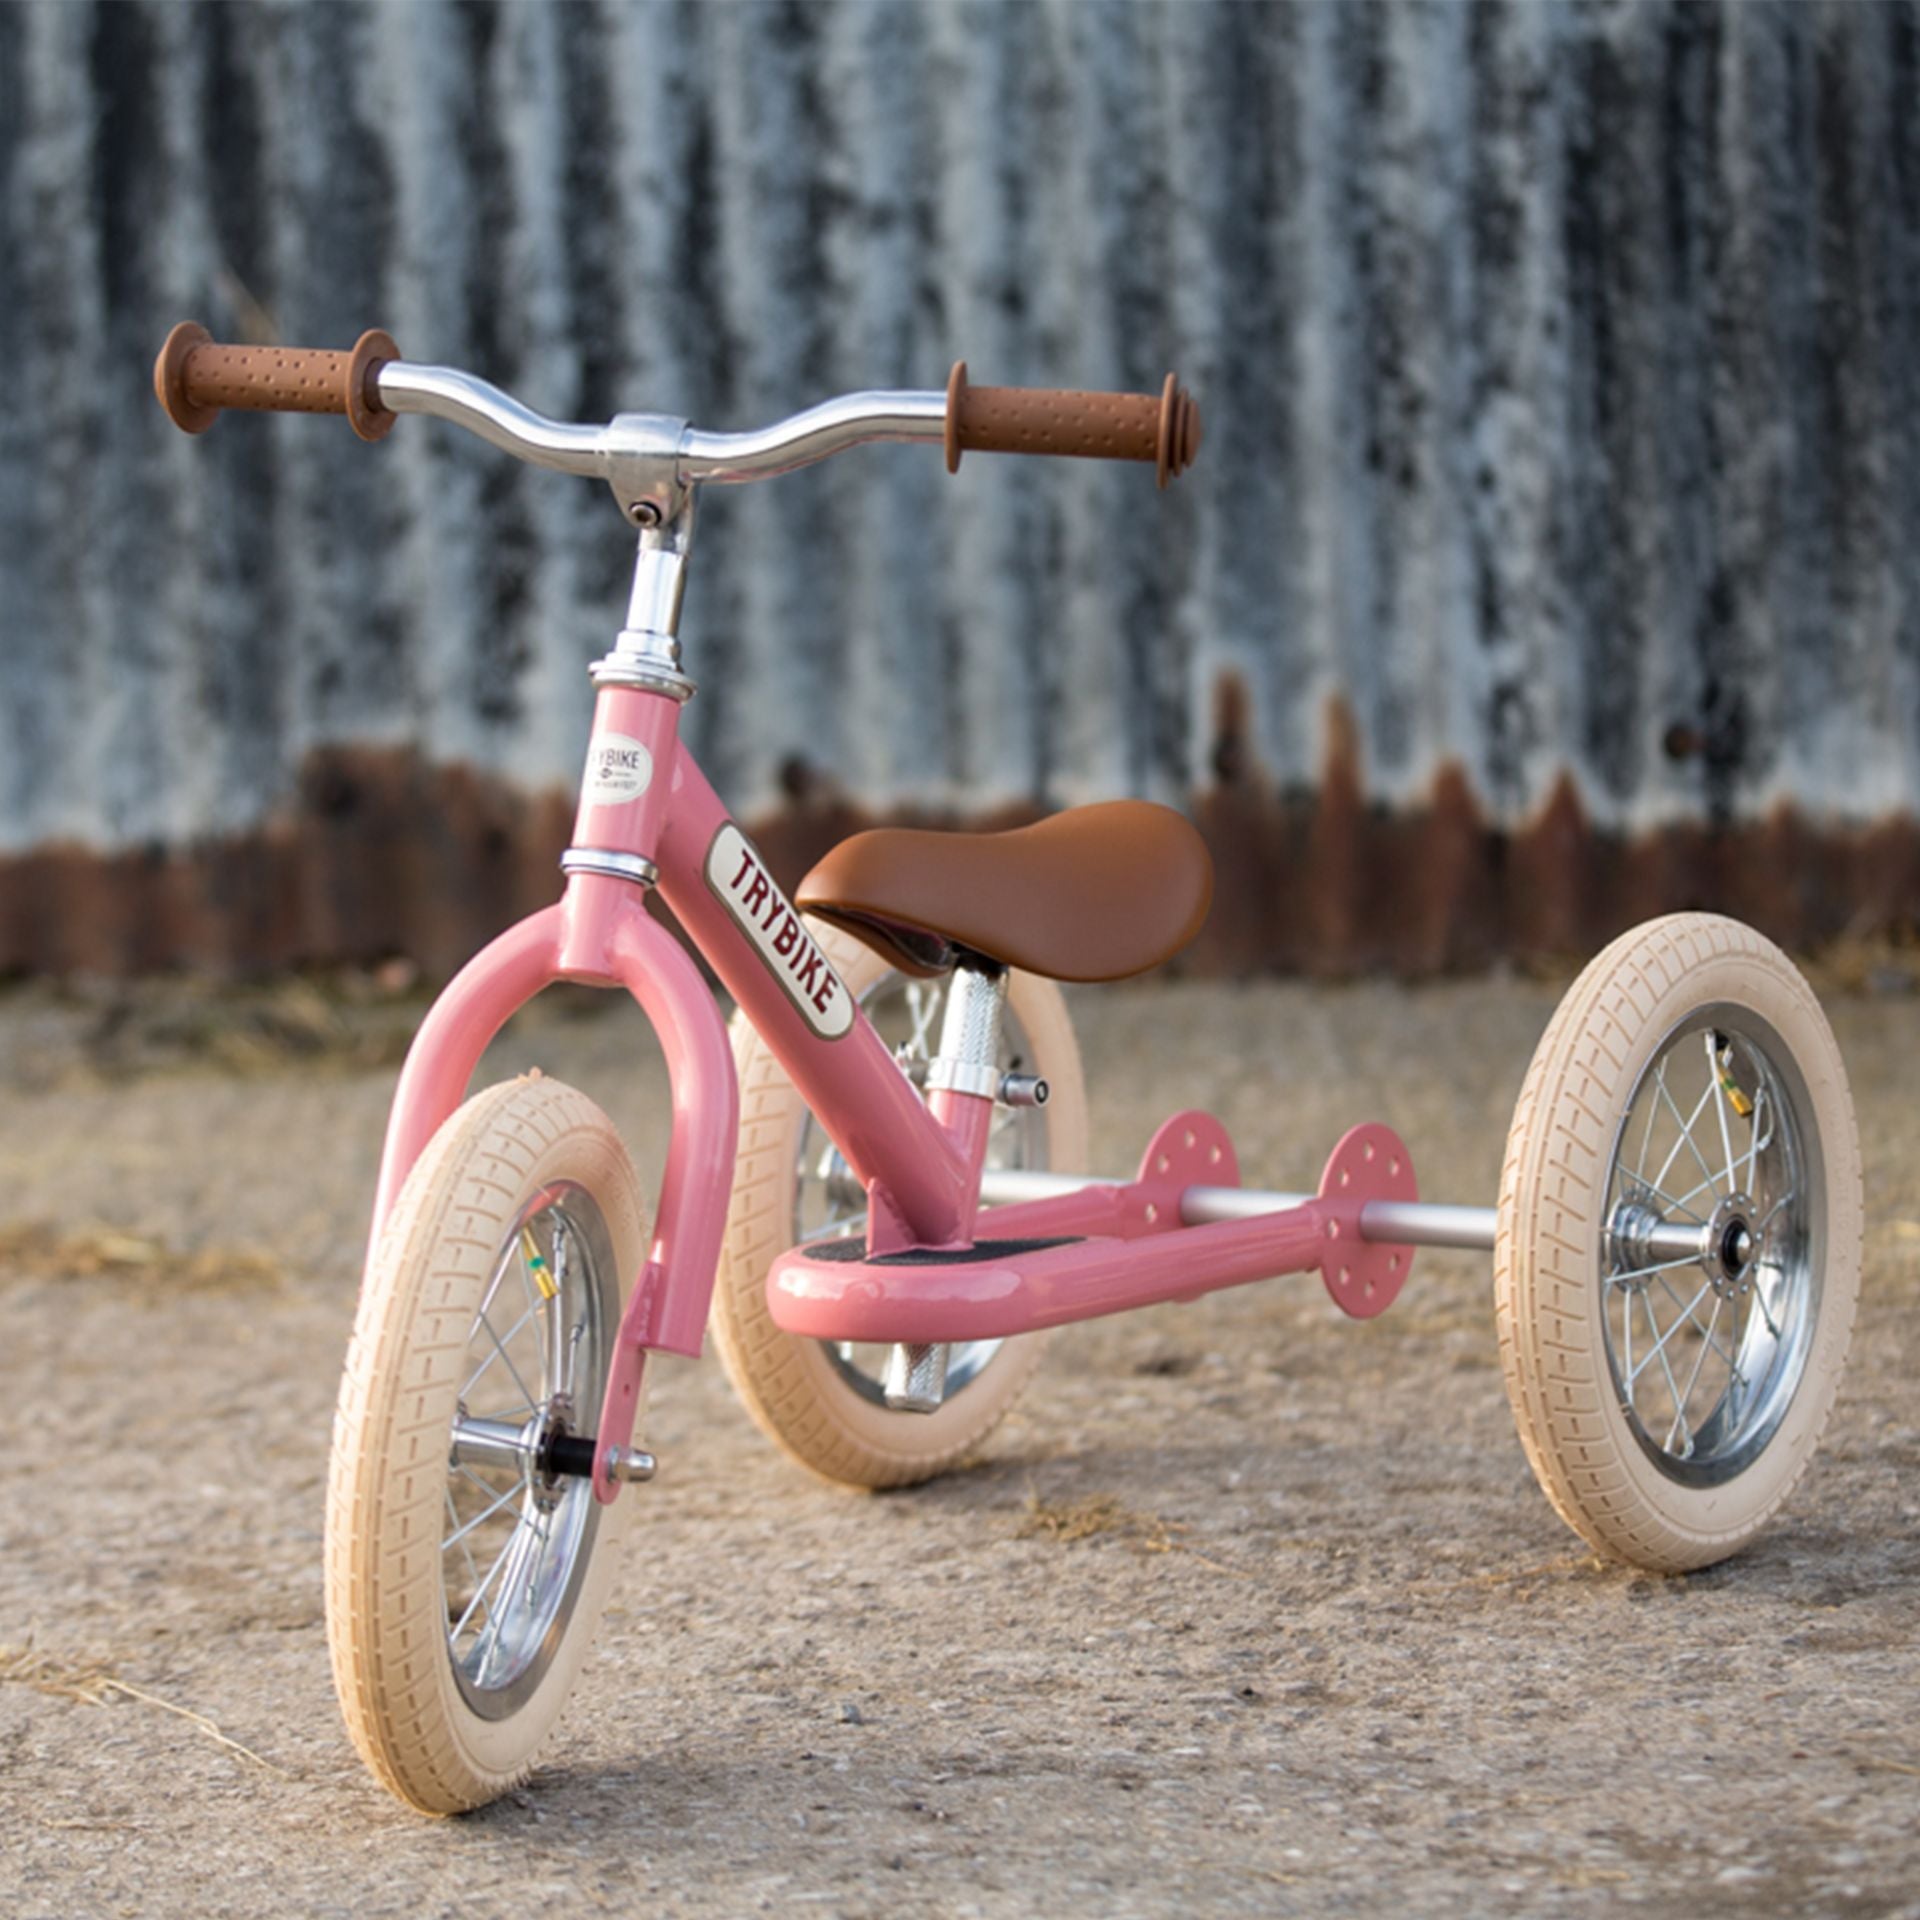 Trybike - Steel 2 In 1 Trike / Balance Bike - Vintage Pink